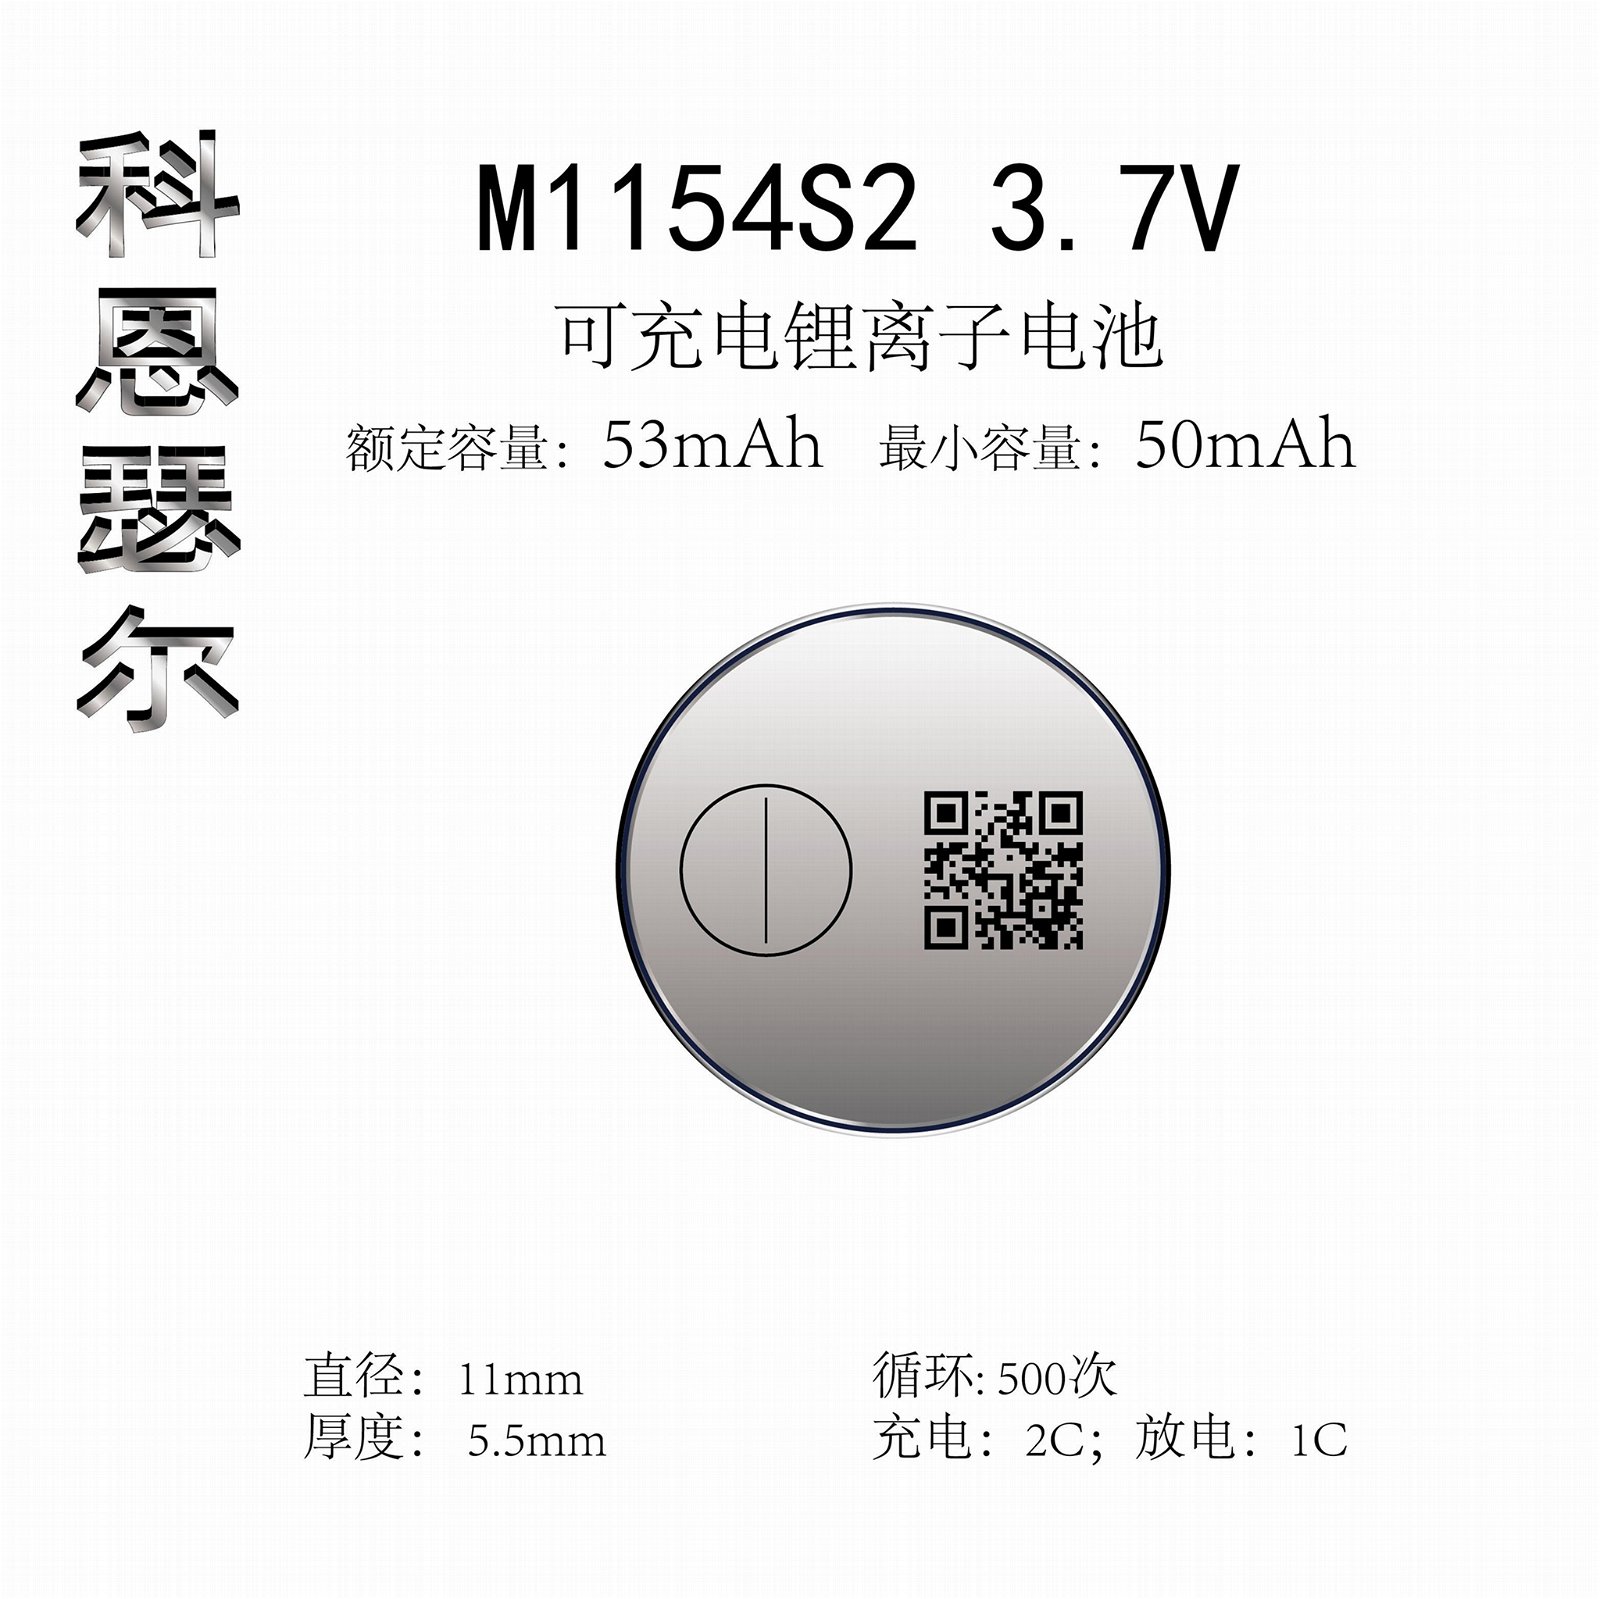 M1154 3.7V 53mAh TWS無線耳機紐扣式鋰離子電池 2